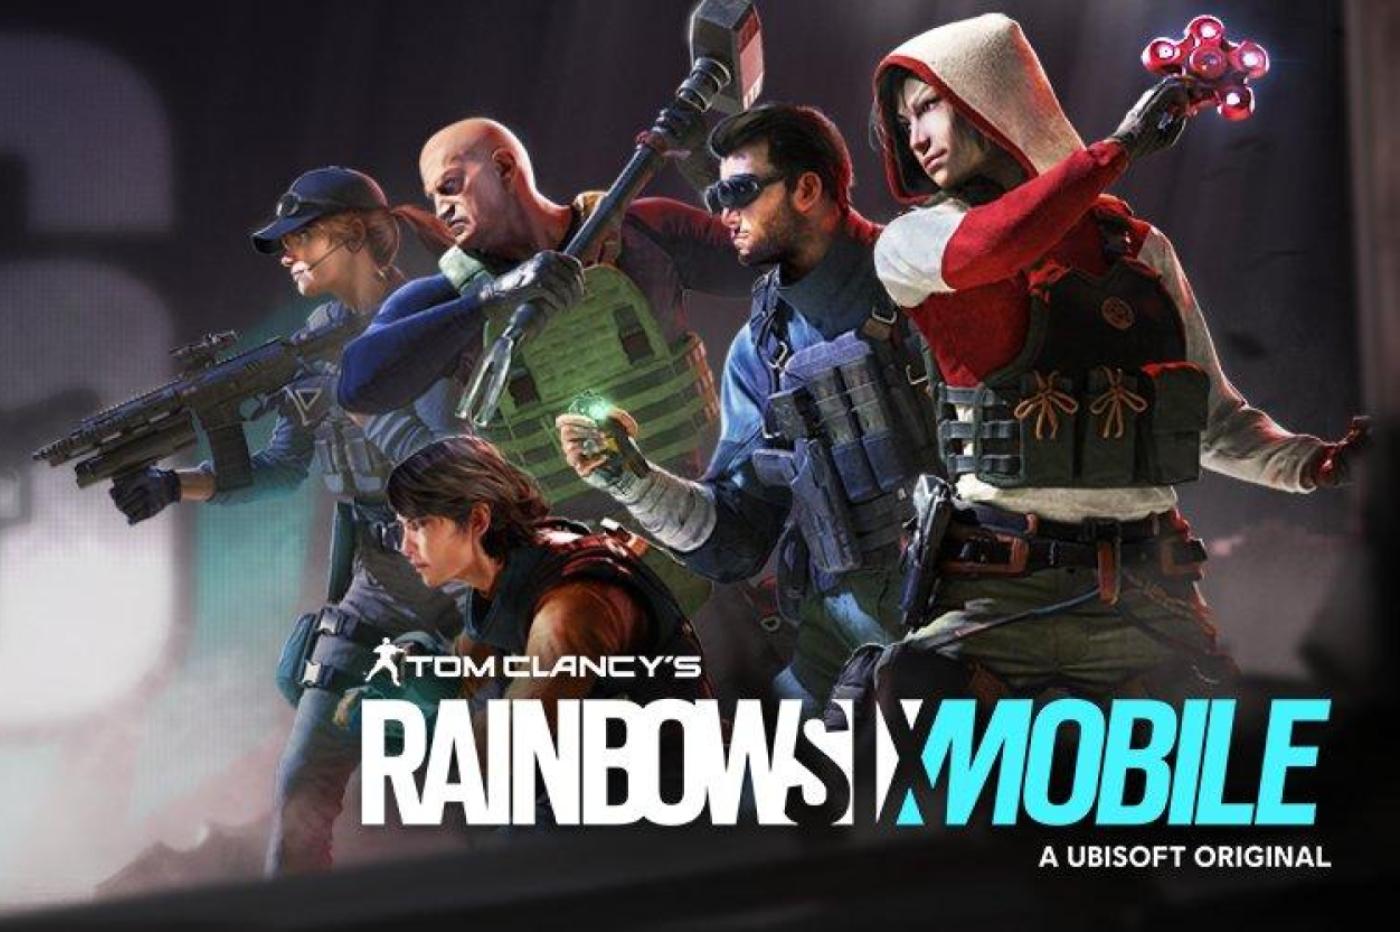 Rainbow 6 mobile. Раинбов сикс мобайл. Rainbow Six Monile. Rainbow Six Siege mobile. Когда вышла rainbow six